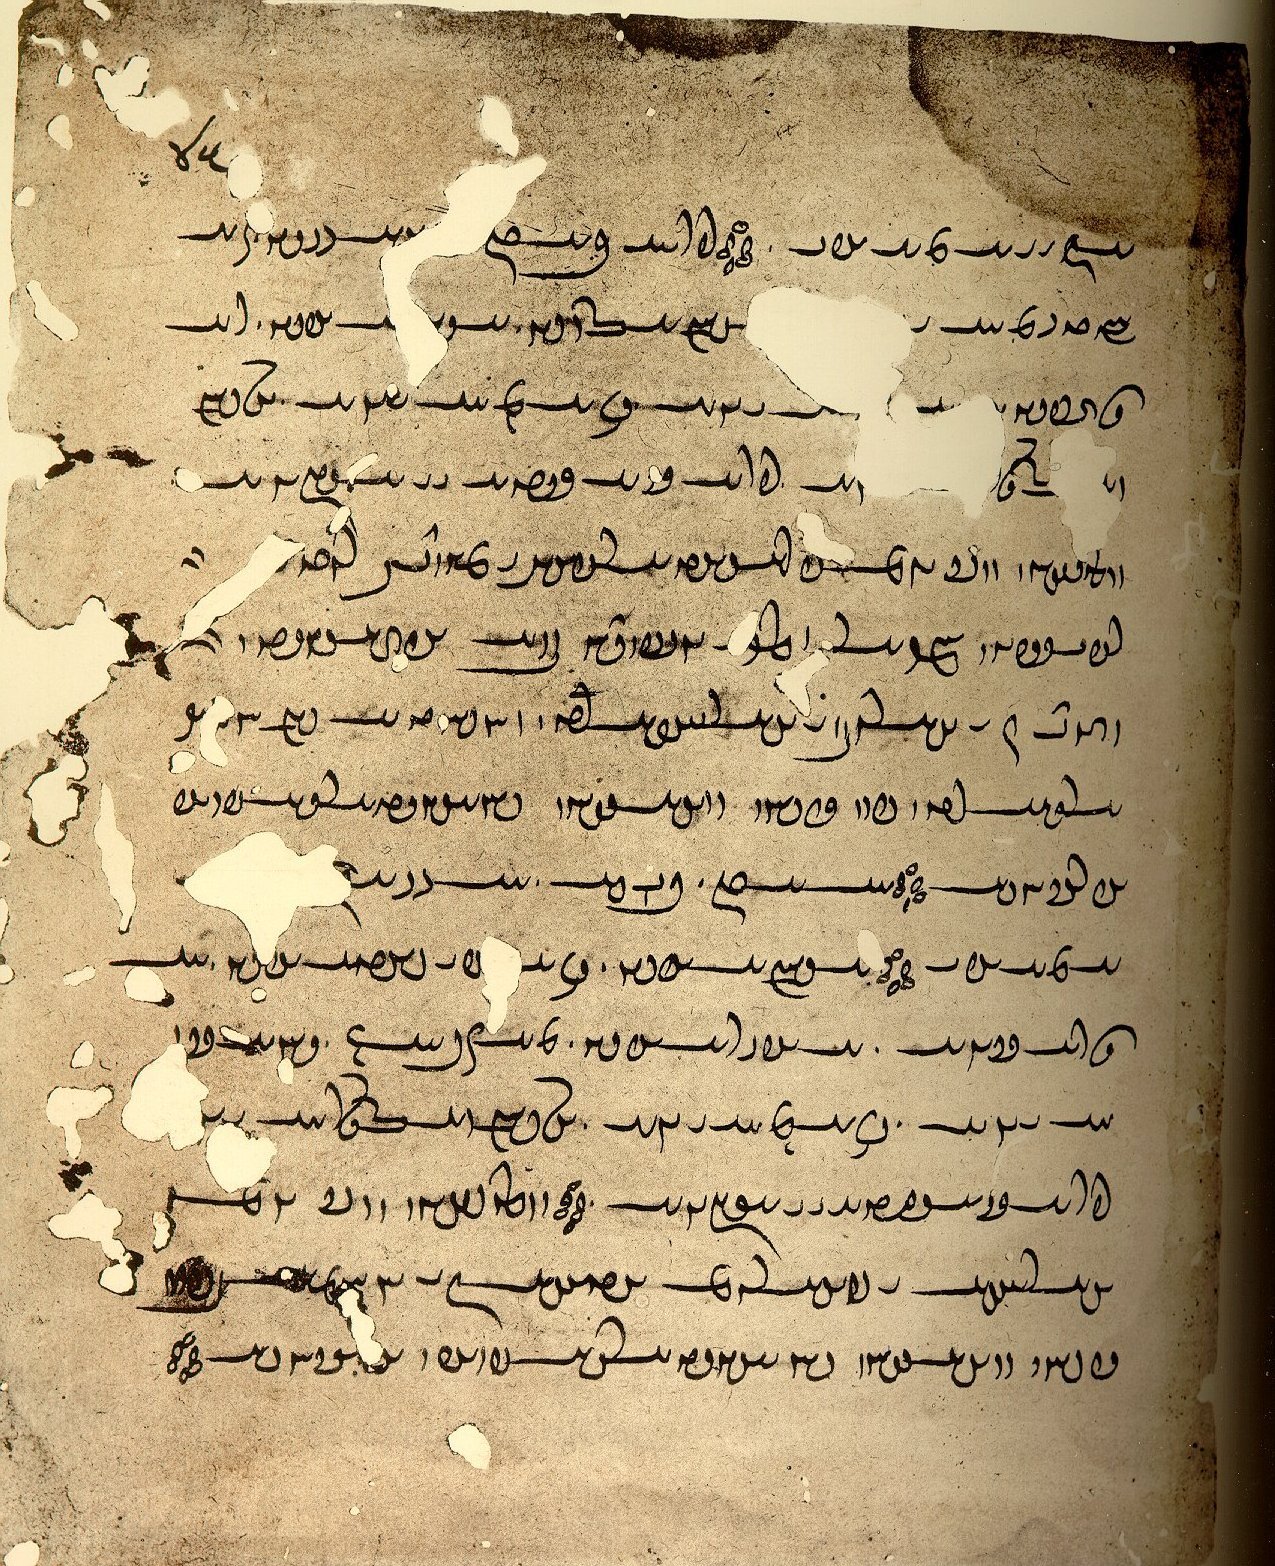 TITUS MANUSCRIPTA: The Avestan Manuscript J2